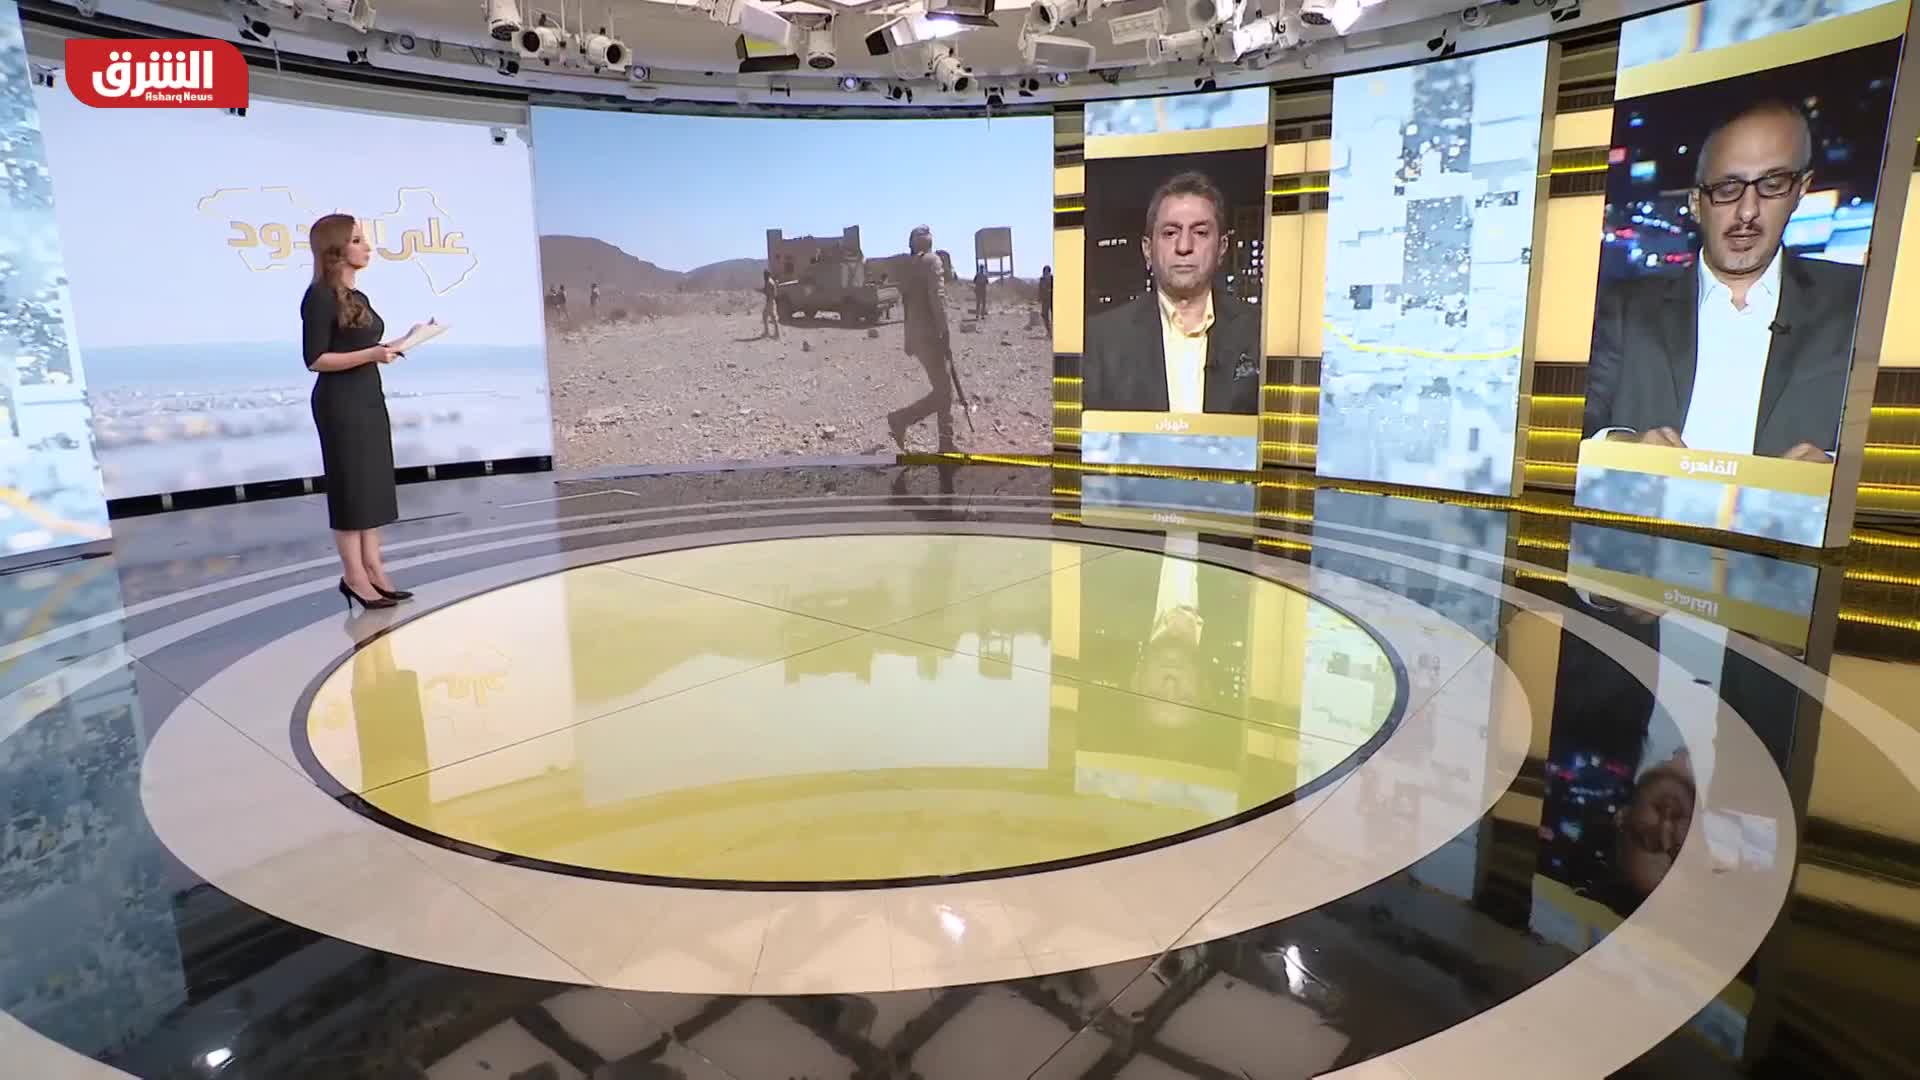 ما الذي حرّك الأزمة اليمنية بسرعة كبيرة في المرحلة الحالية؟